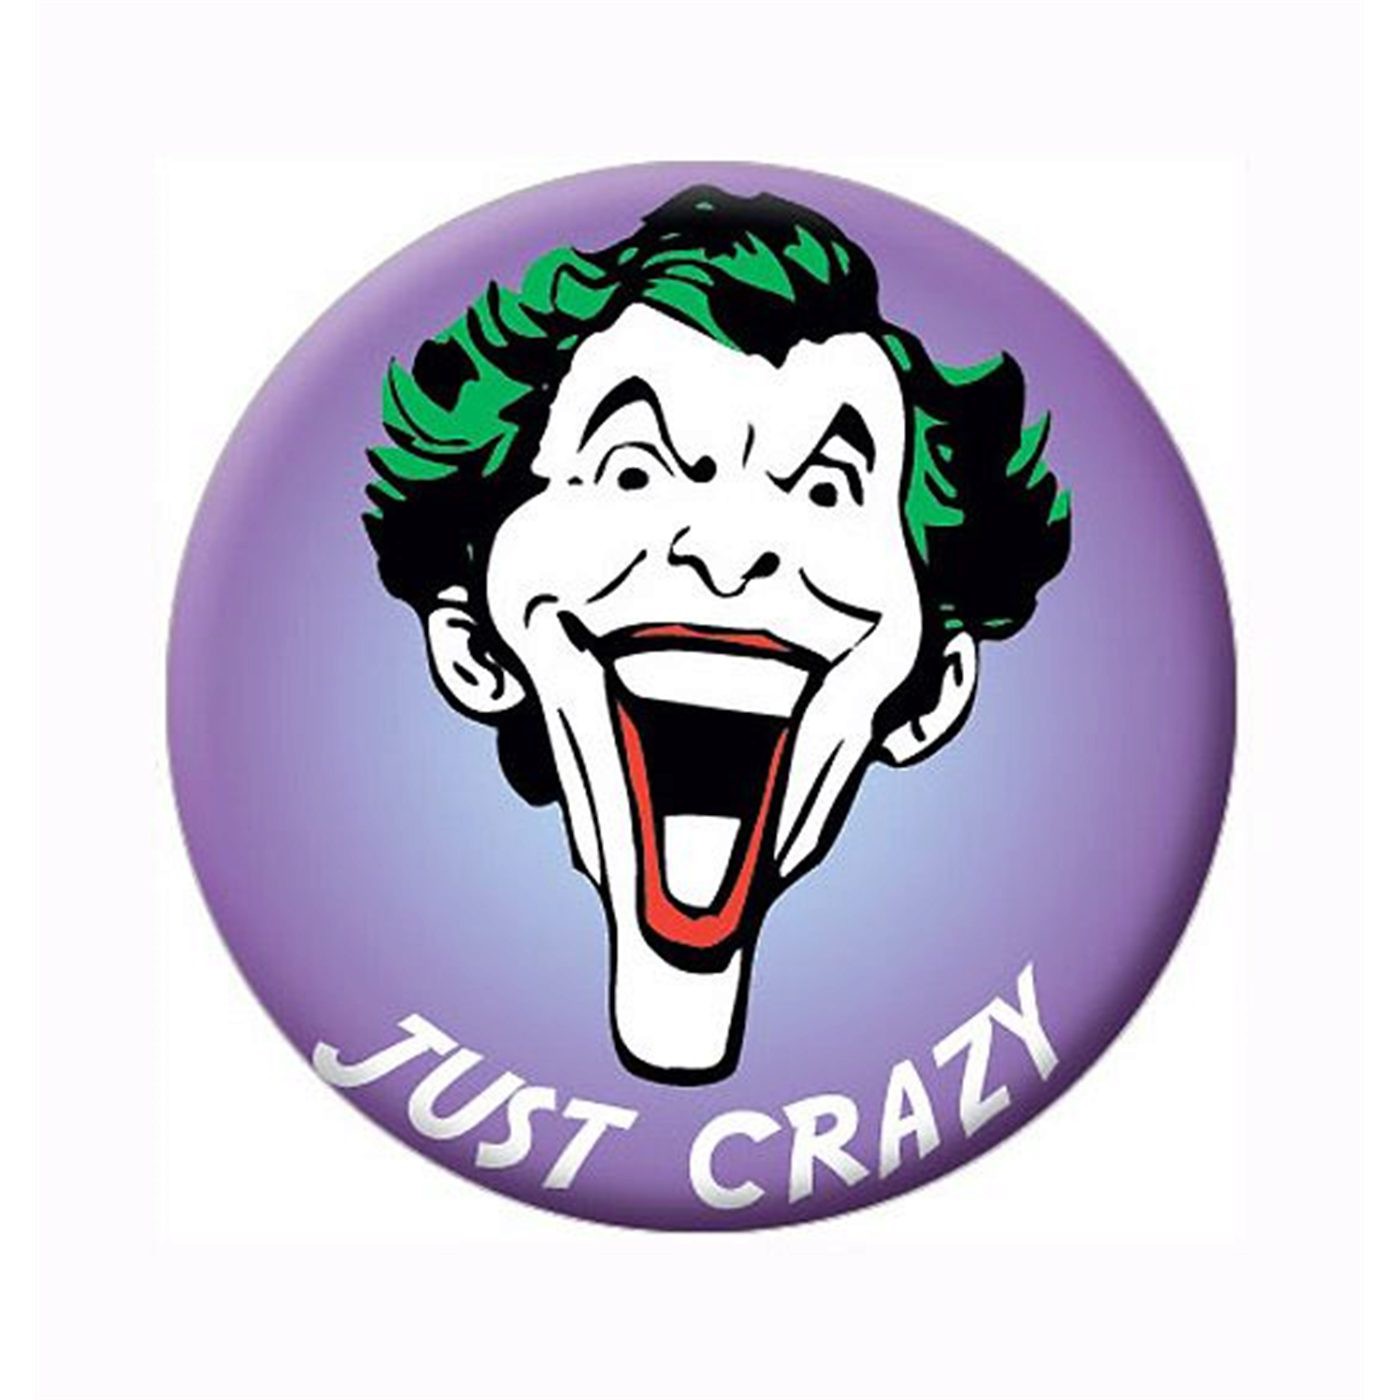 Joker Just Crazy Button